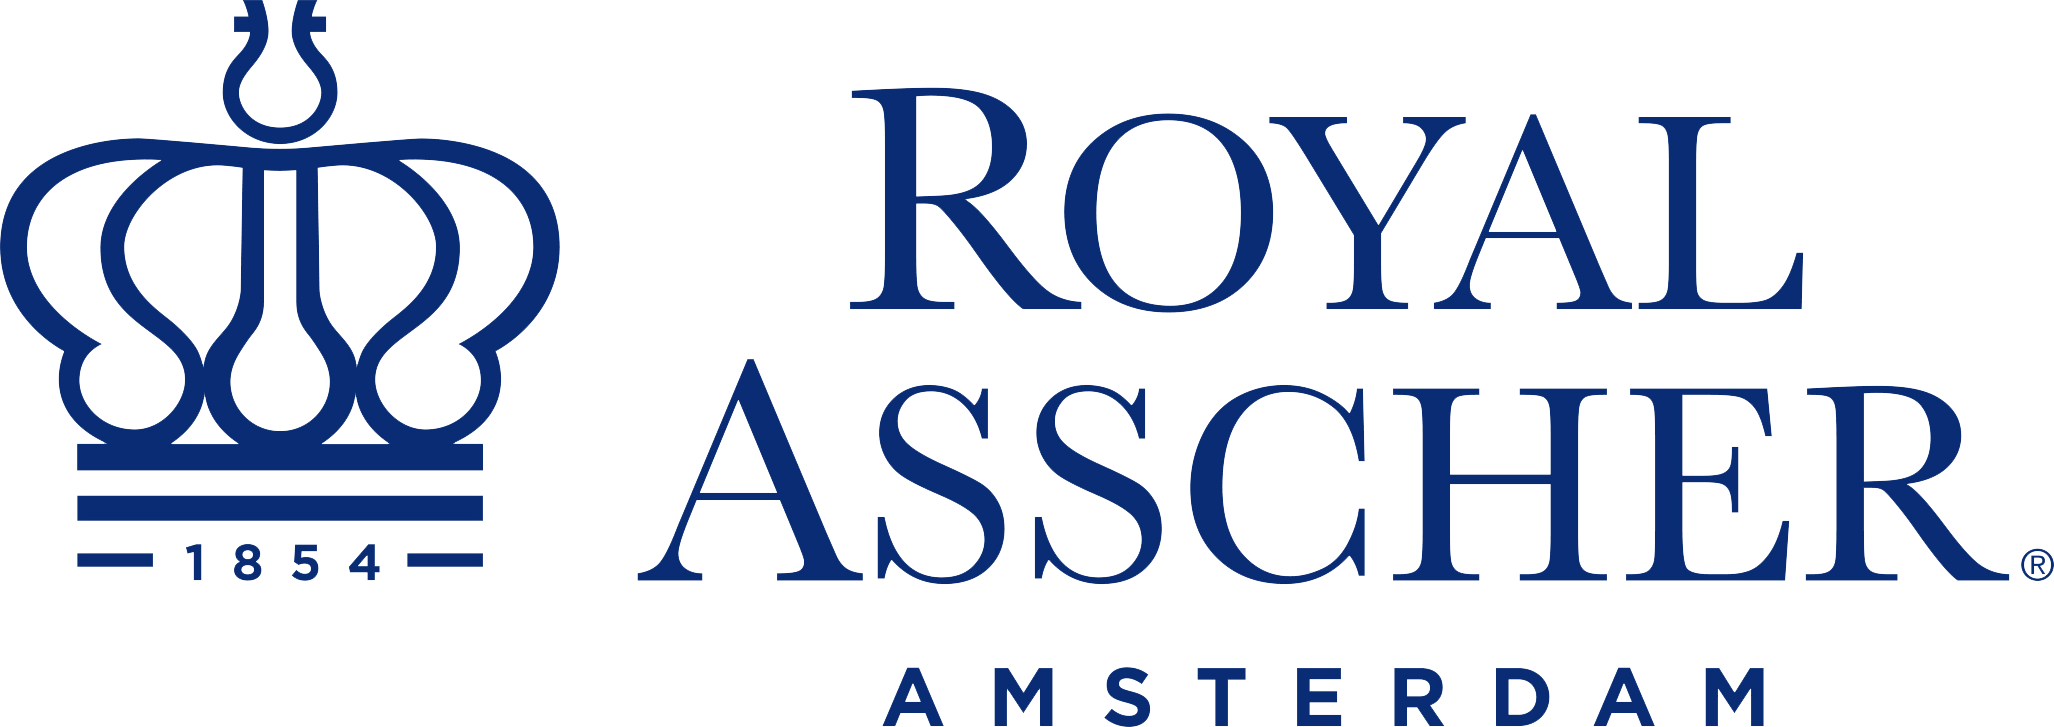 Royal Asscher Logo